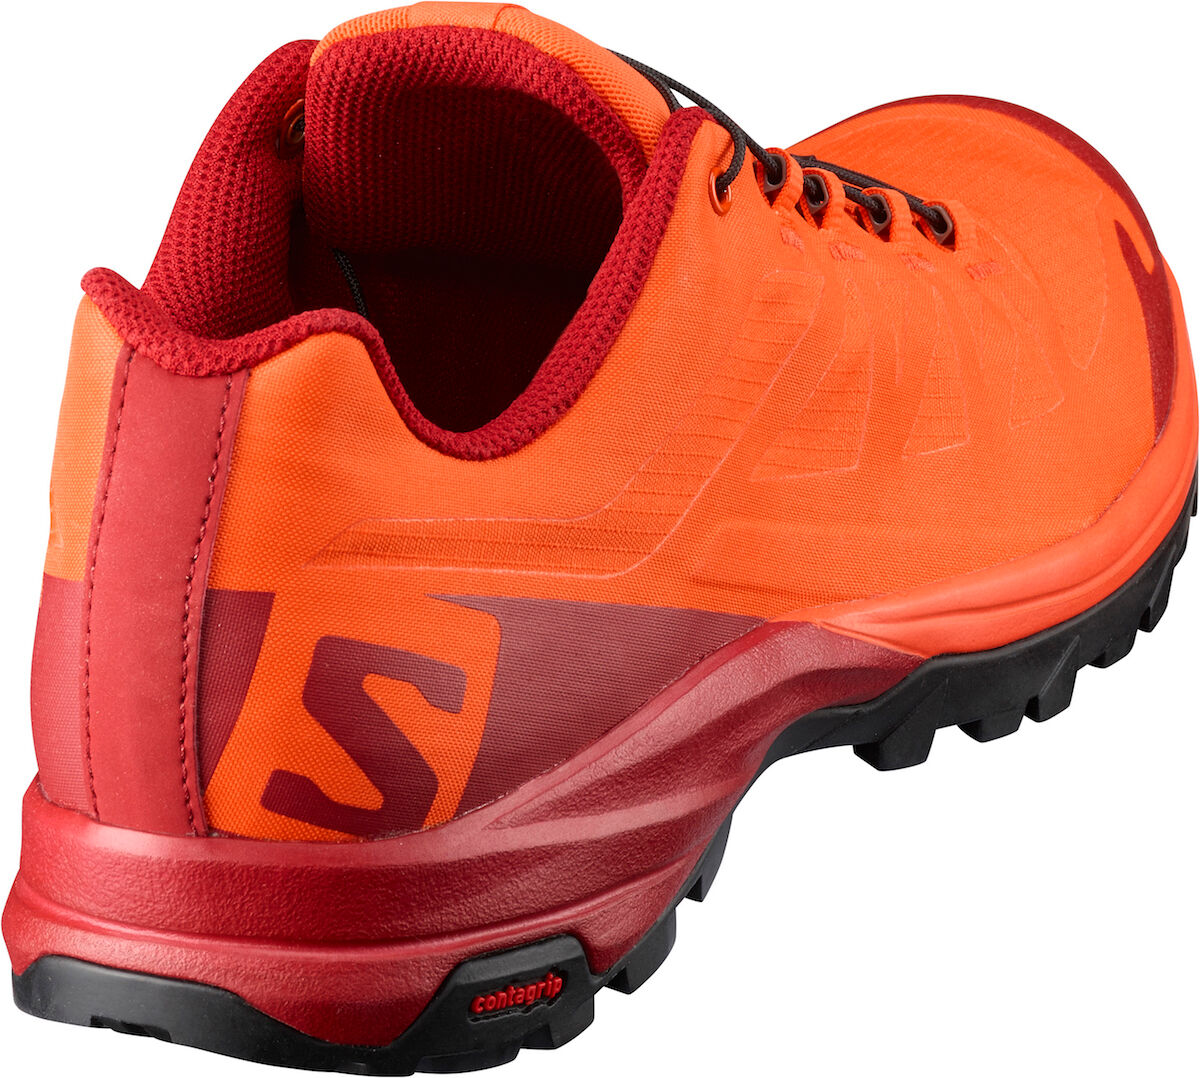 Salomon - Outpath - Walking Boots - Men's